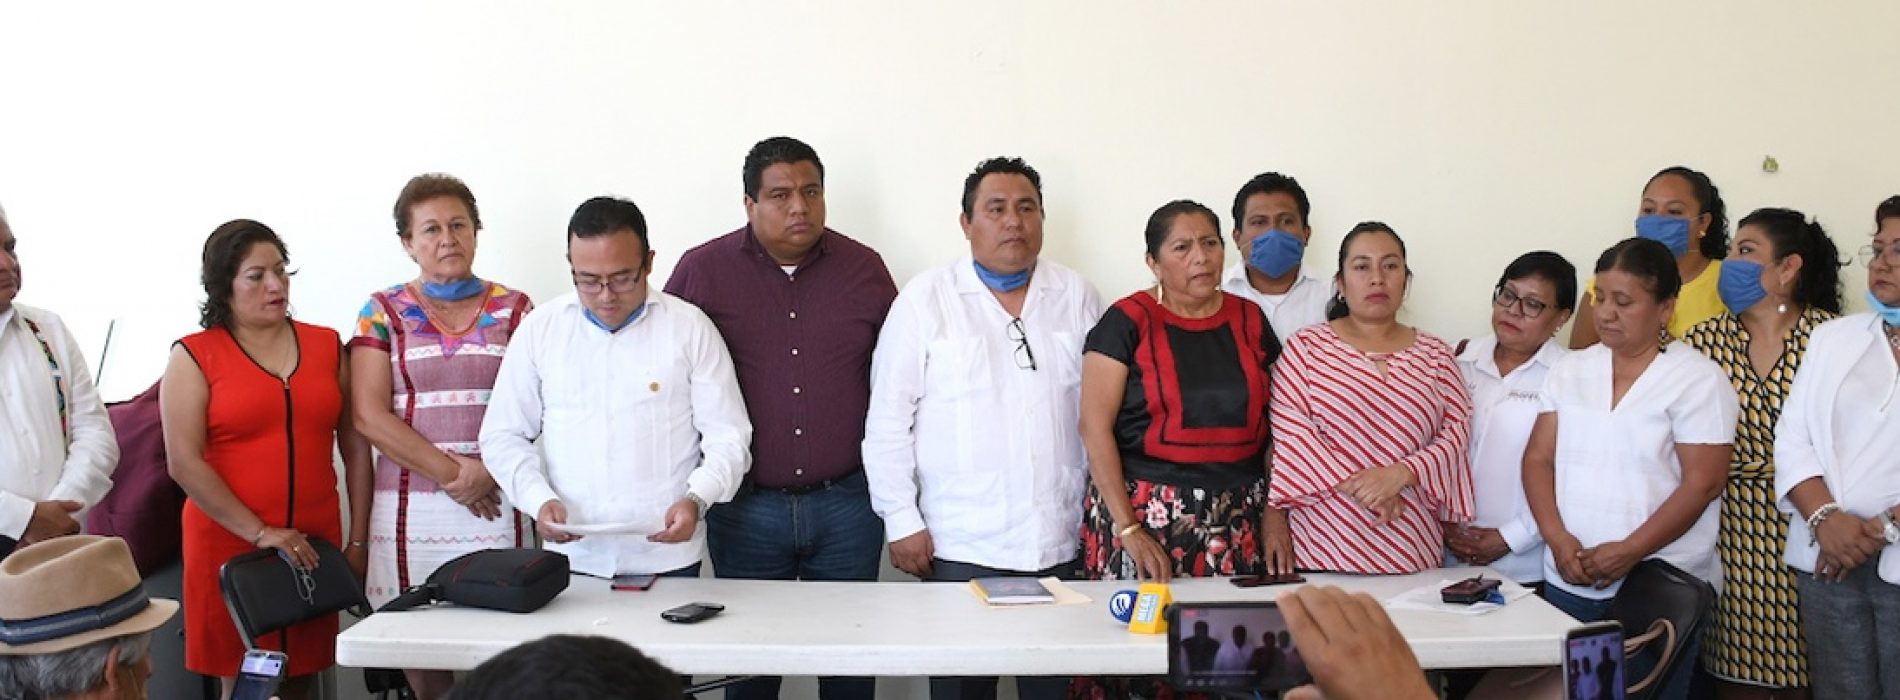 Justicia para María Elena, demandan diputadas y diputados locales de MORENA